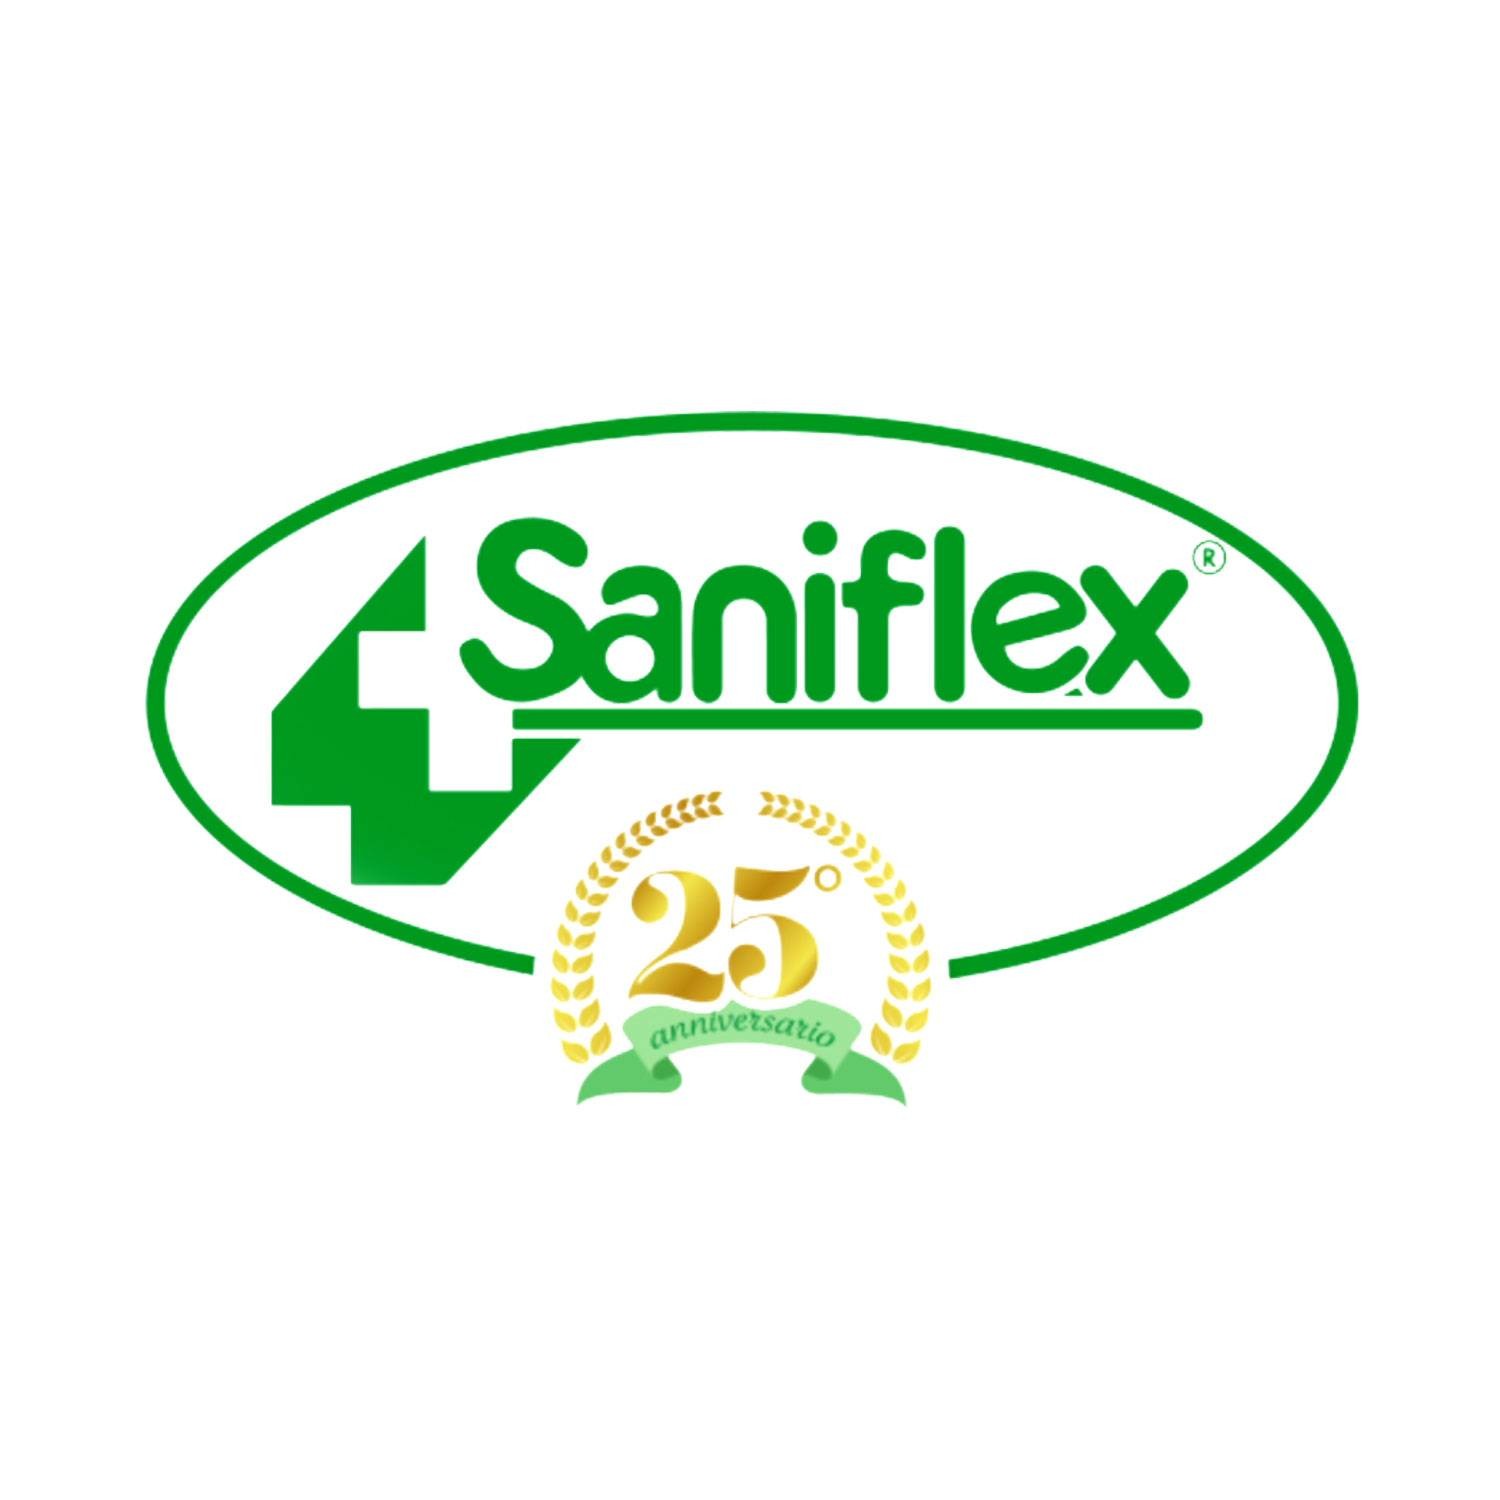 Saniflex